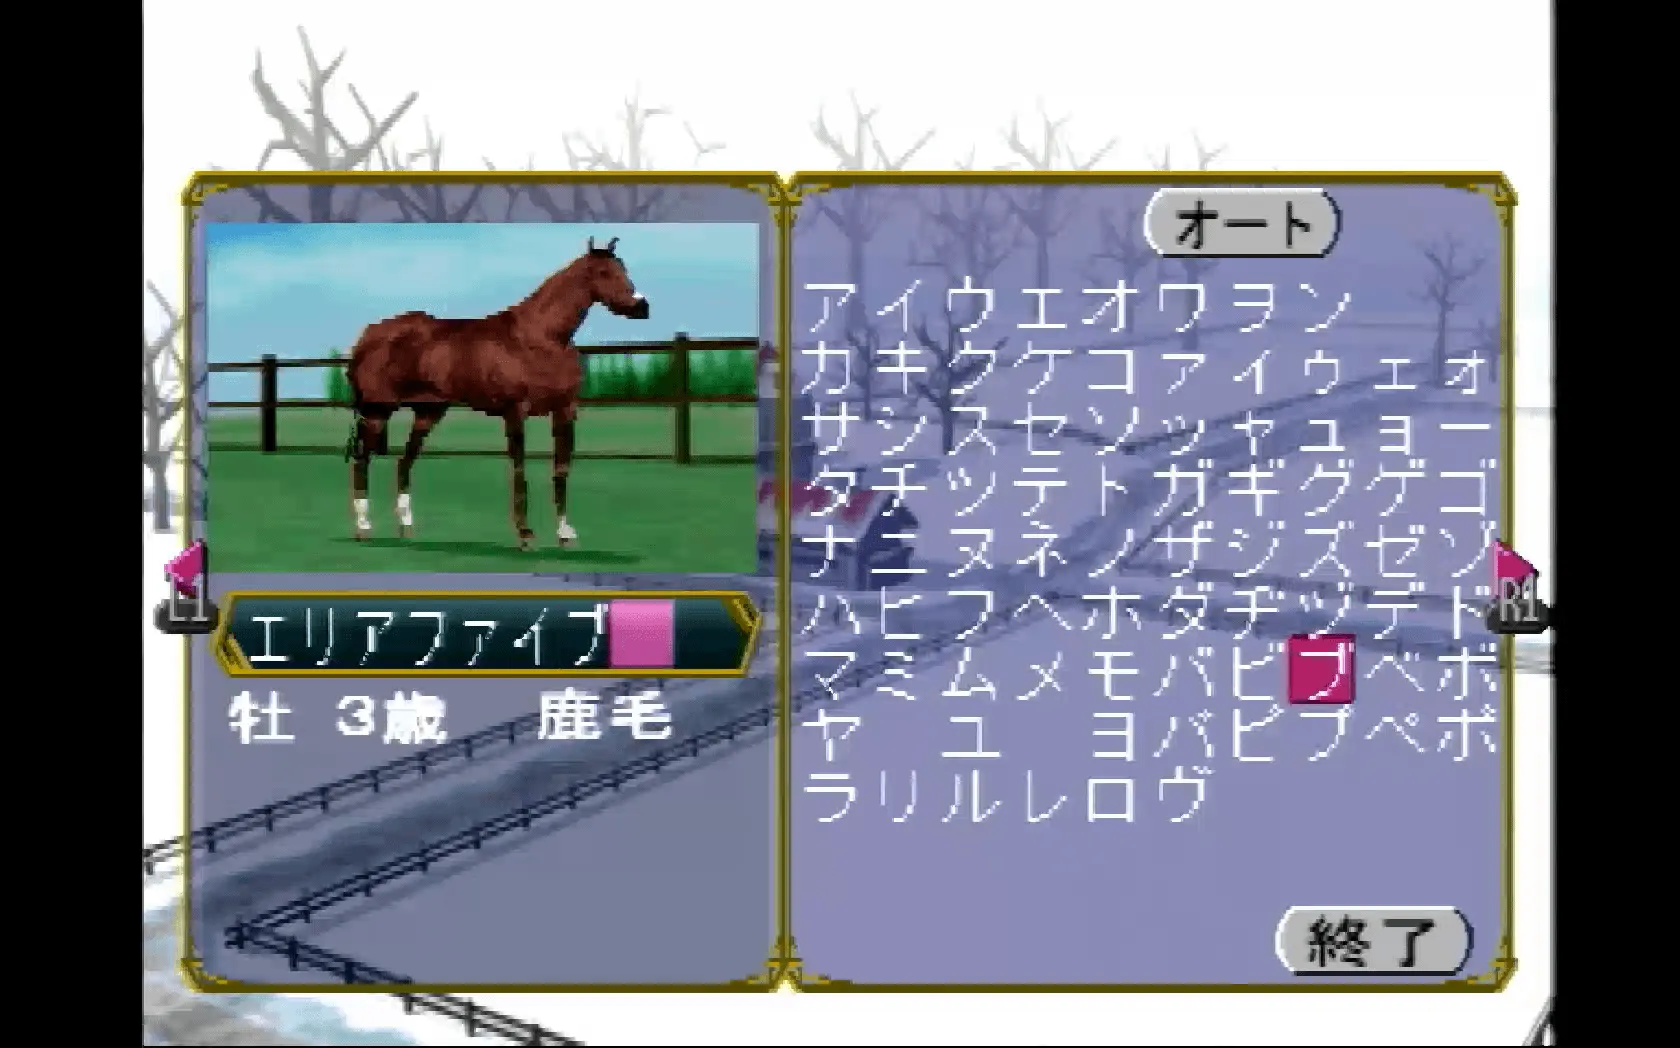 『ディスクダービー 名馬を作ろう!!』のゲーム画面